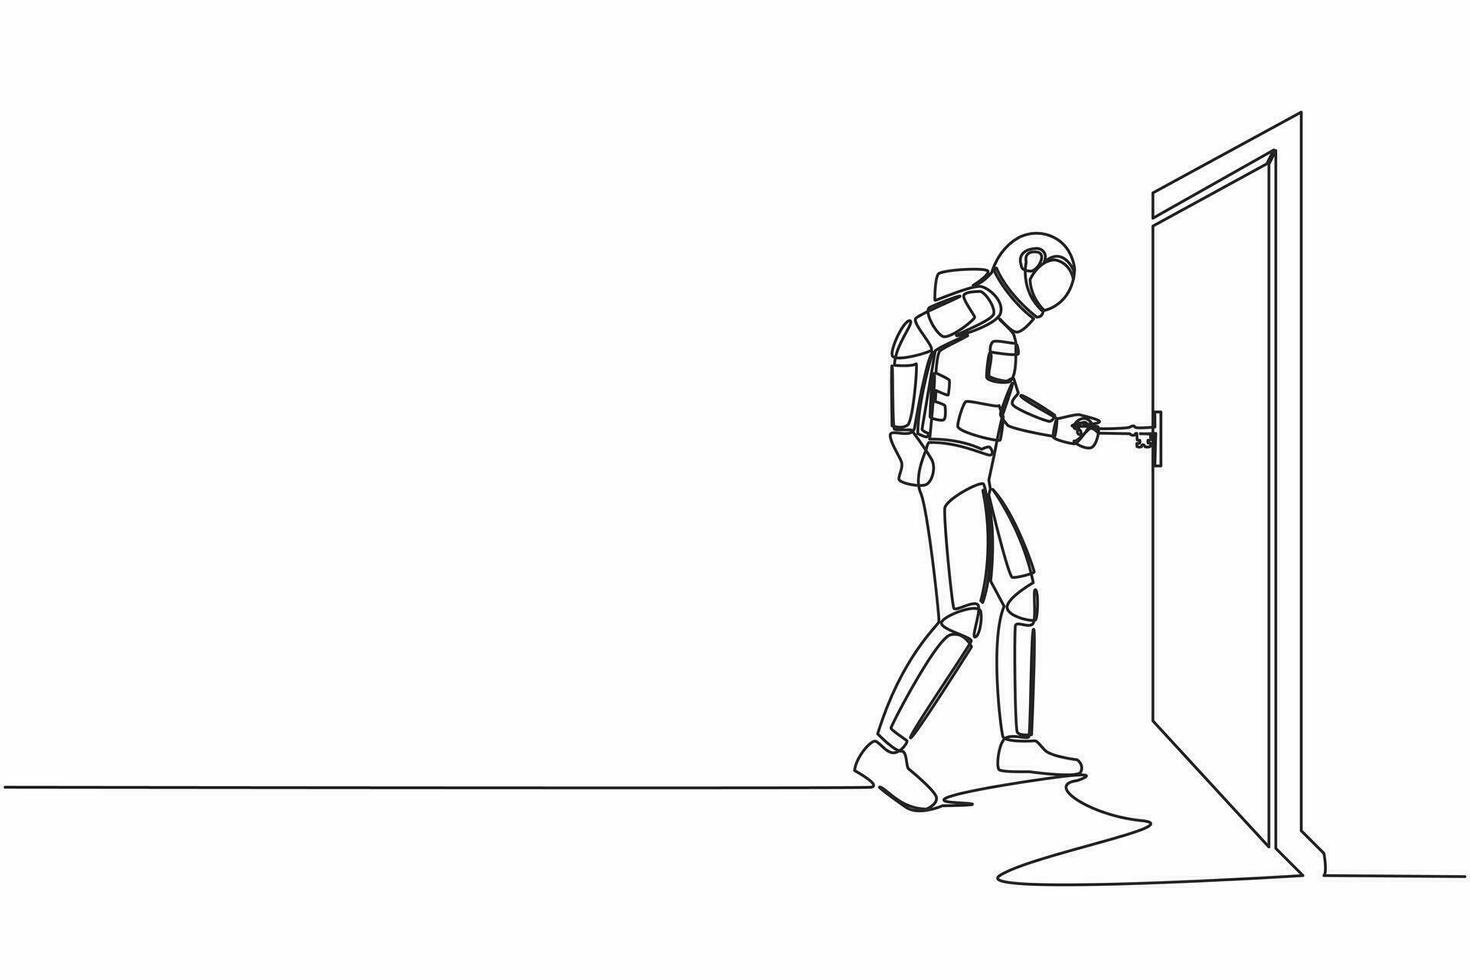 single een lijn tekening astronaut insert sleutel in sleutelgat welke is Aan de deur. ruimtevaarder Open kantoor kamer deur in maan oppervlak. kosmisch heelal ruimte. doorlopend lijn grafisch ontwerp vector illustratie